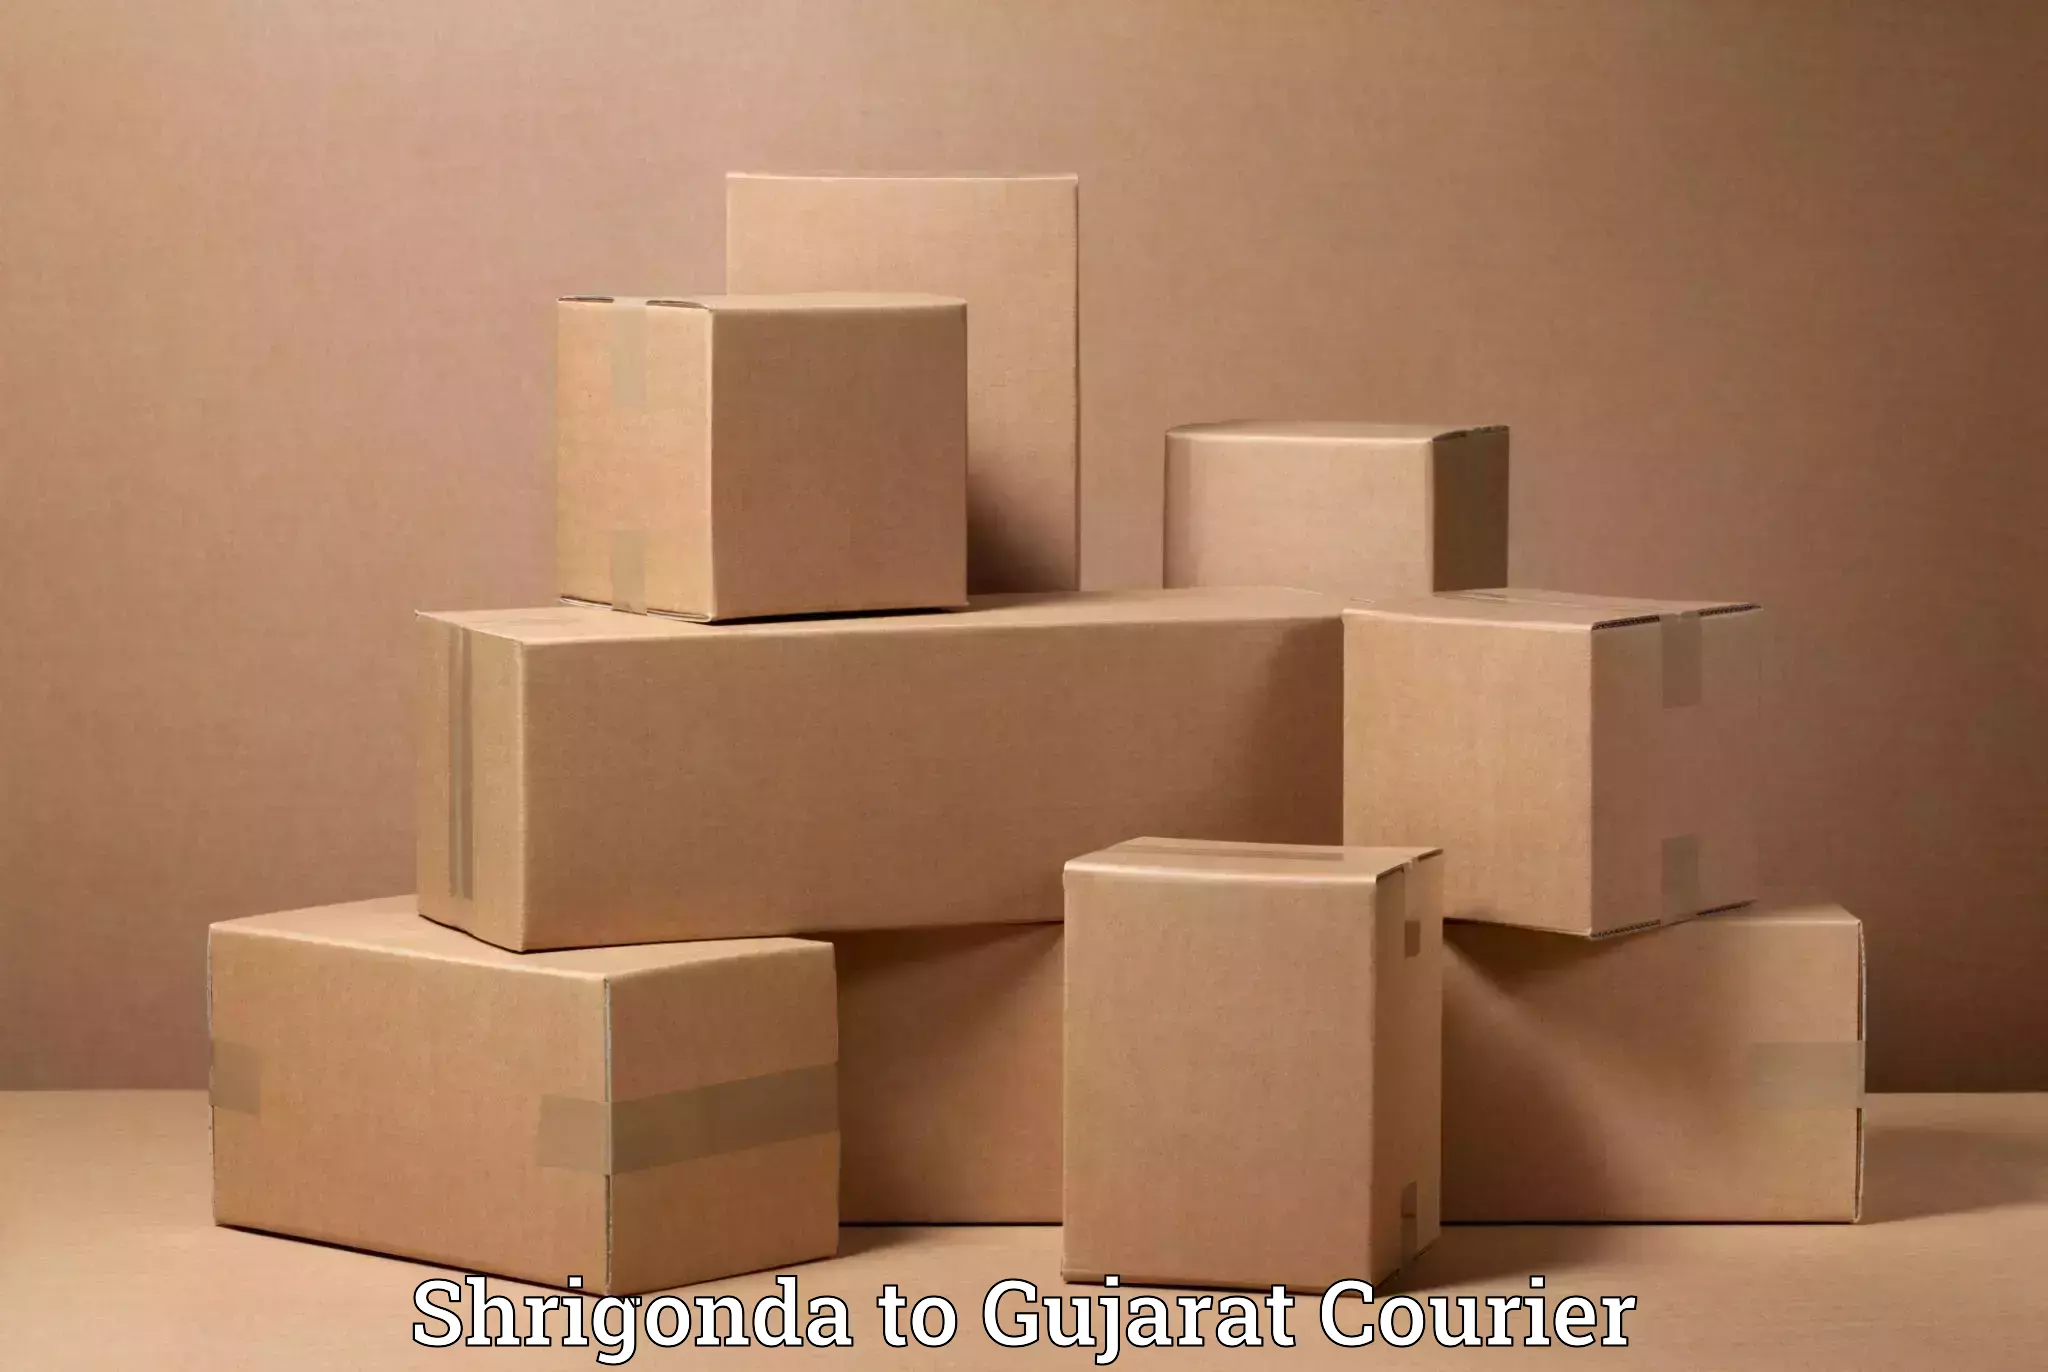 Home moving specialists Shrigonda to Kodinar